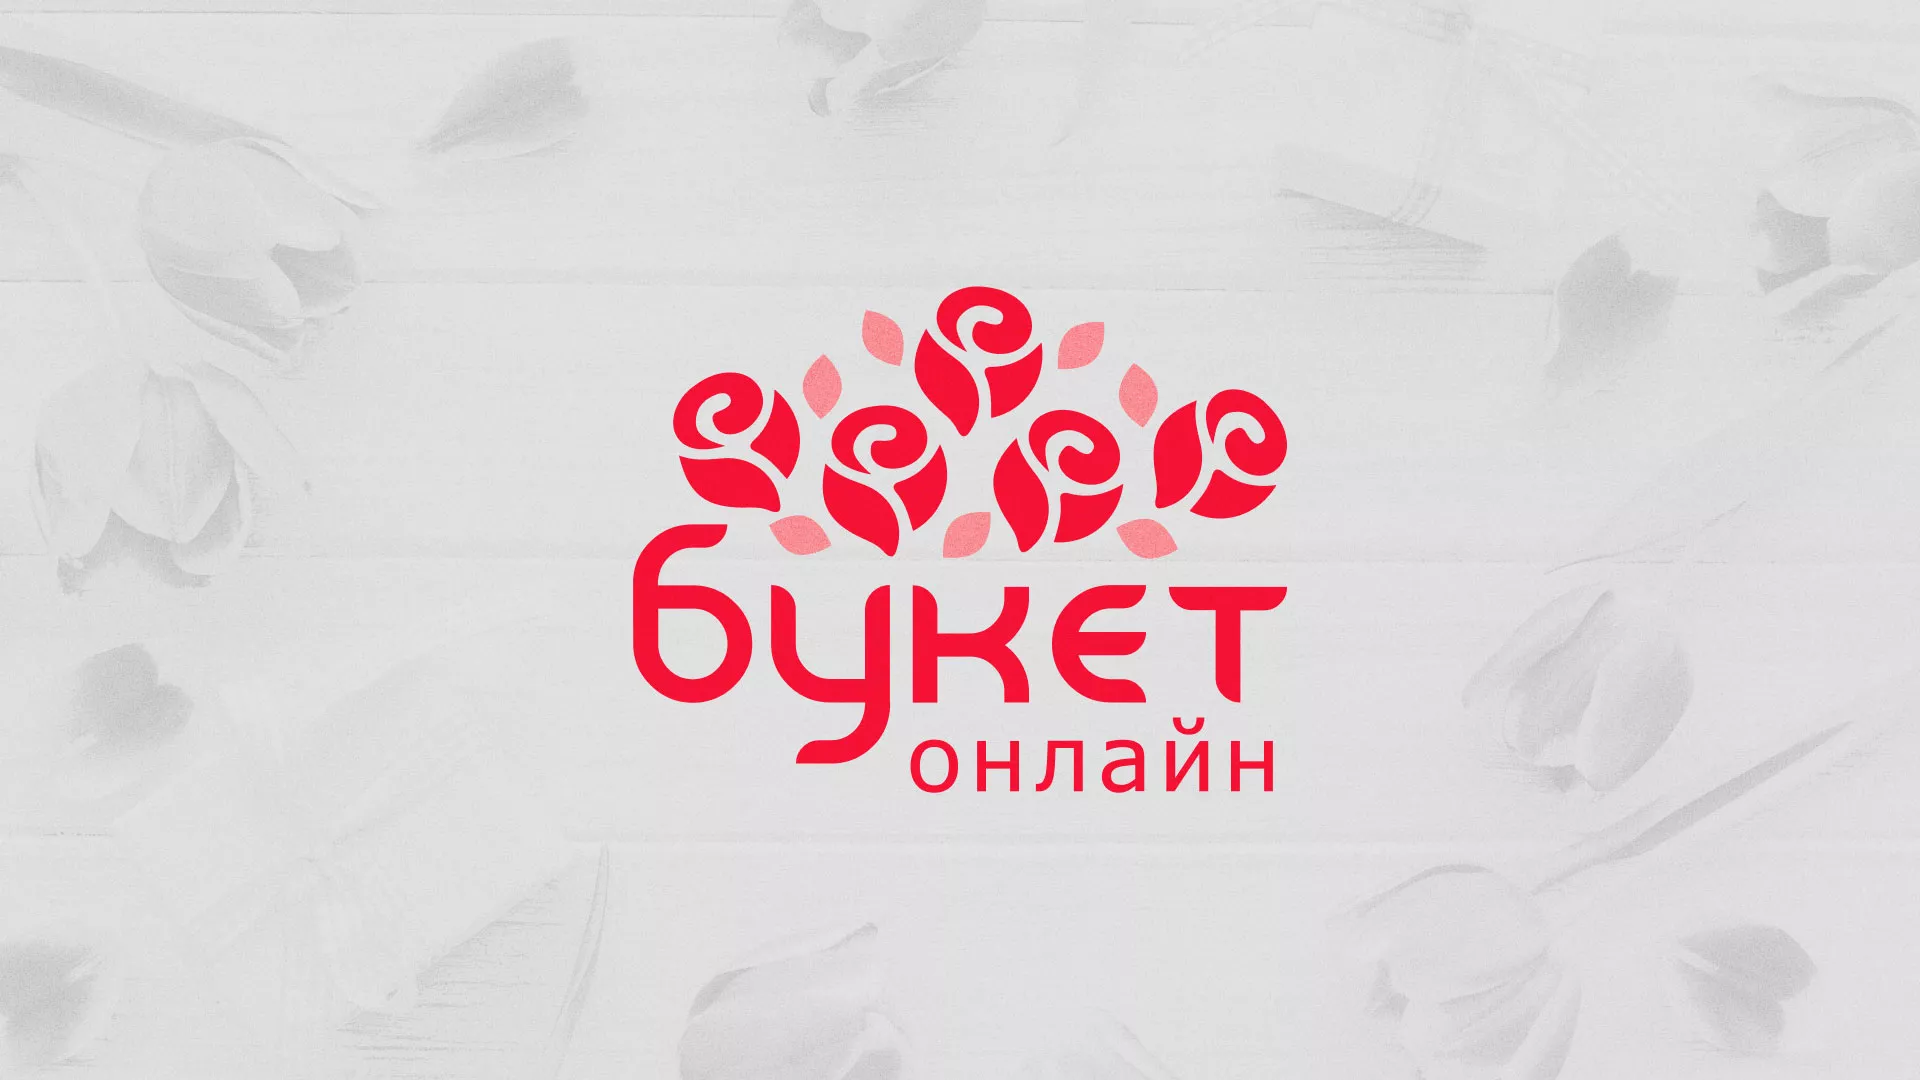 Создание интернет-магазина «Букет-онлайн» по цветам в Невинномысске